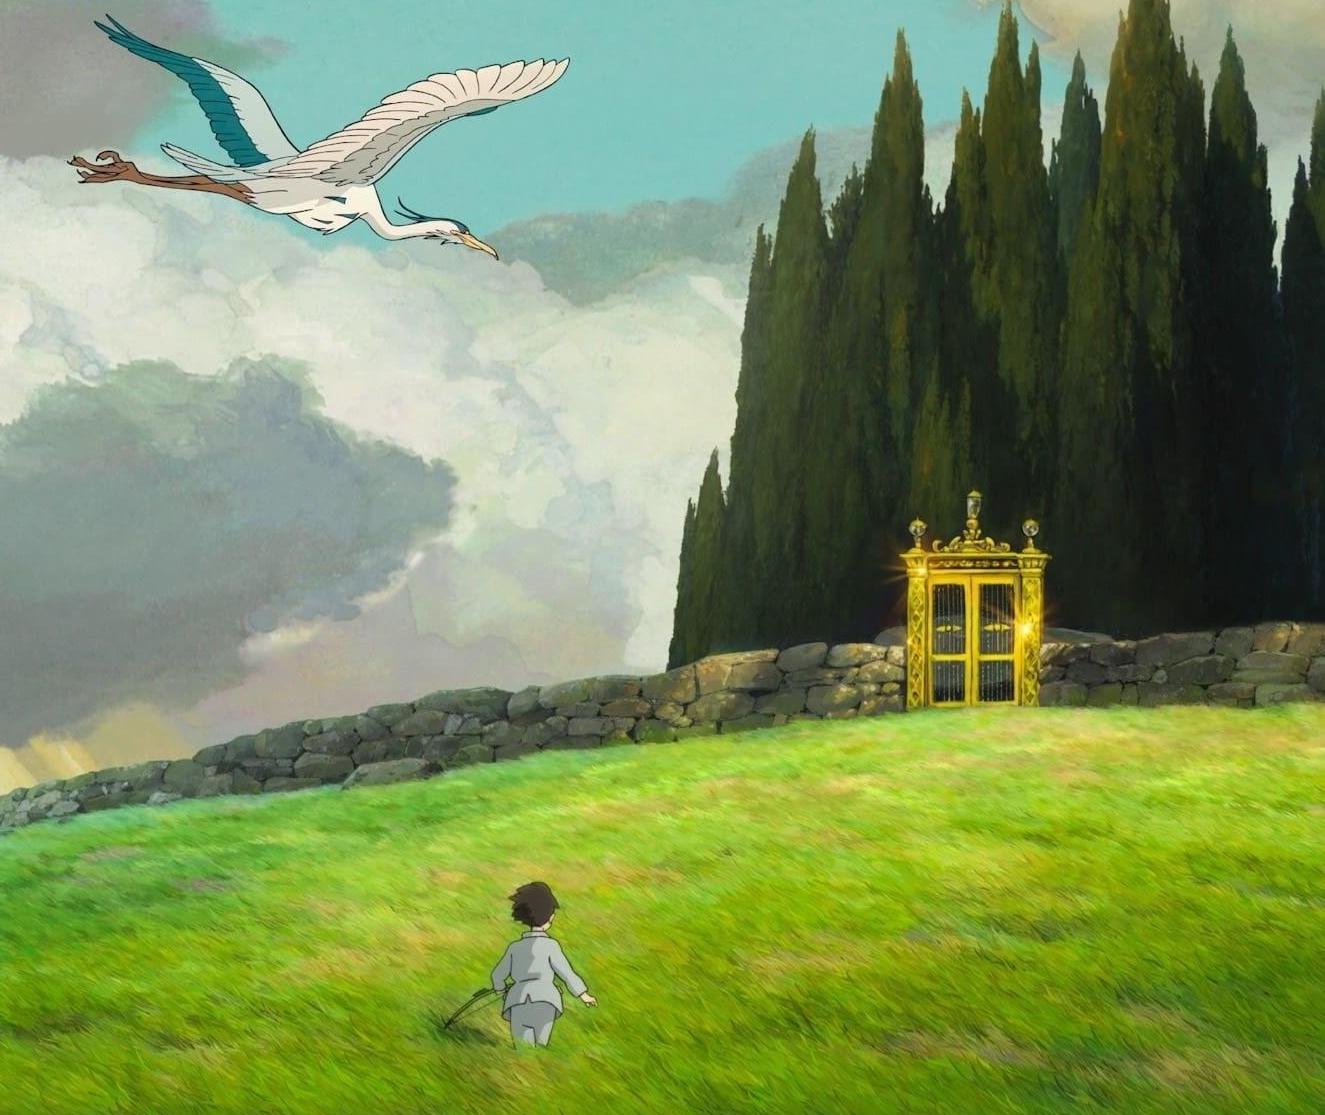 Il Ragazzo e l'Airone, il significato del film di Miyazaki